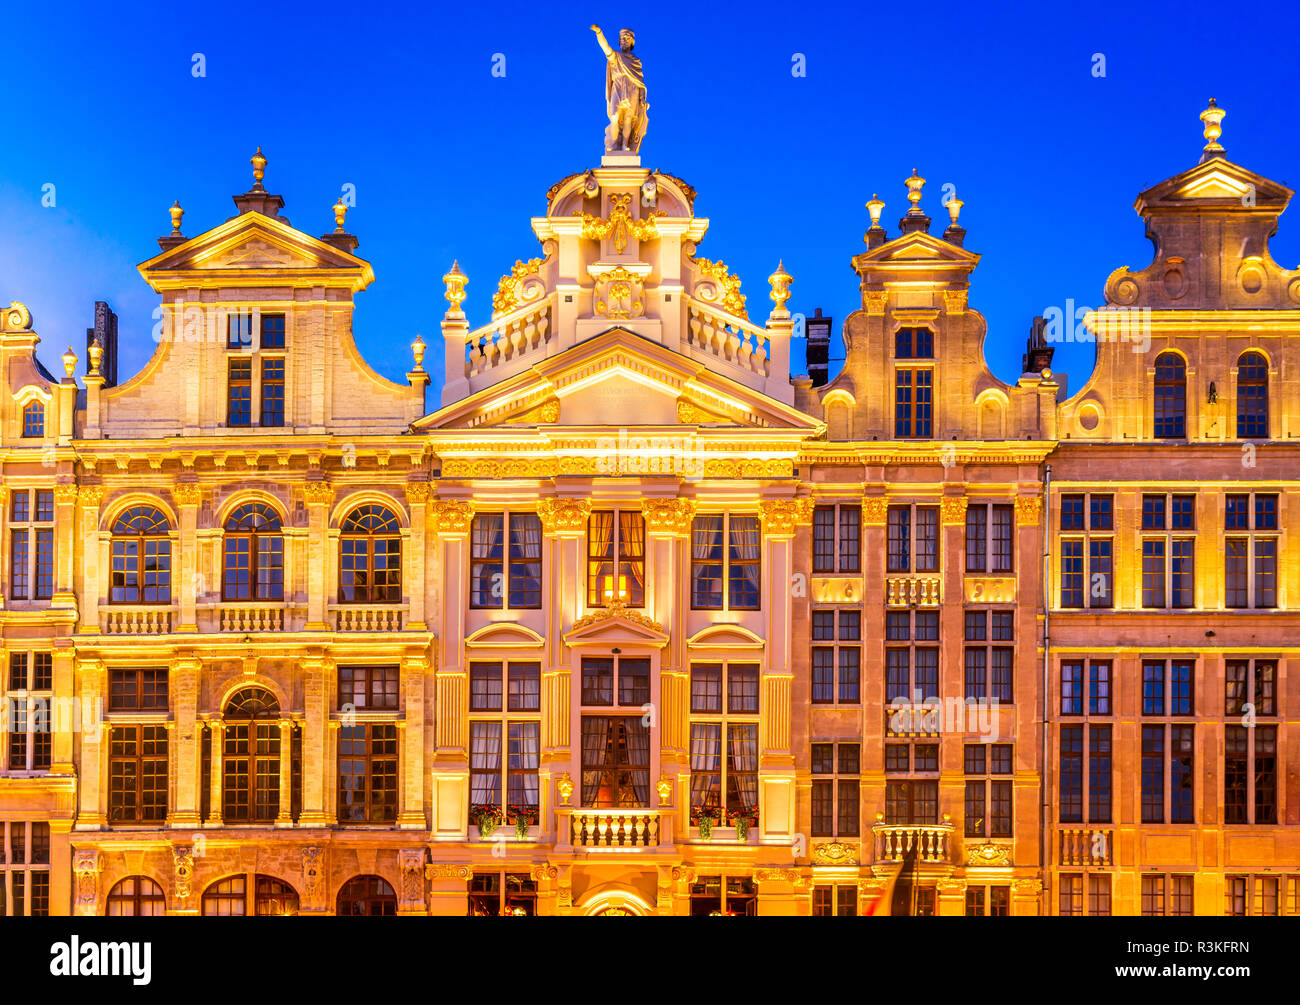 Bruxelles, Belgio. Immagine di notte con architettura medievale in Grand Place (Grote Markt). Foto Stock